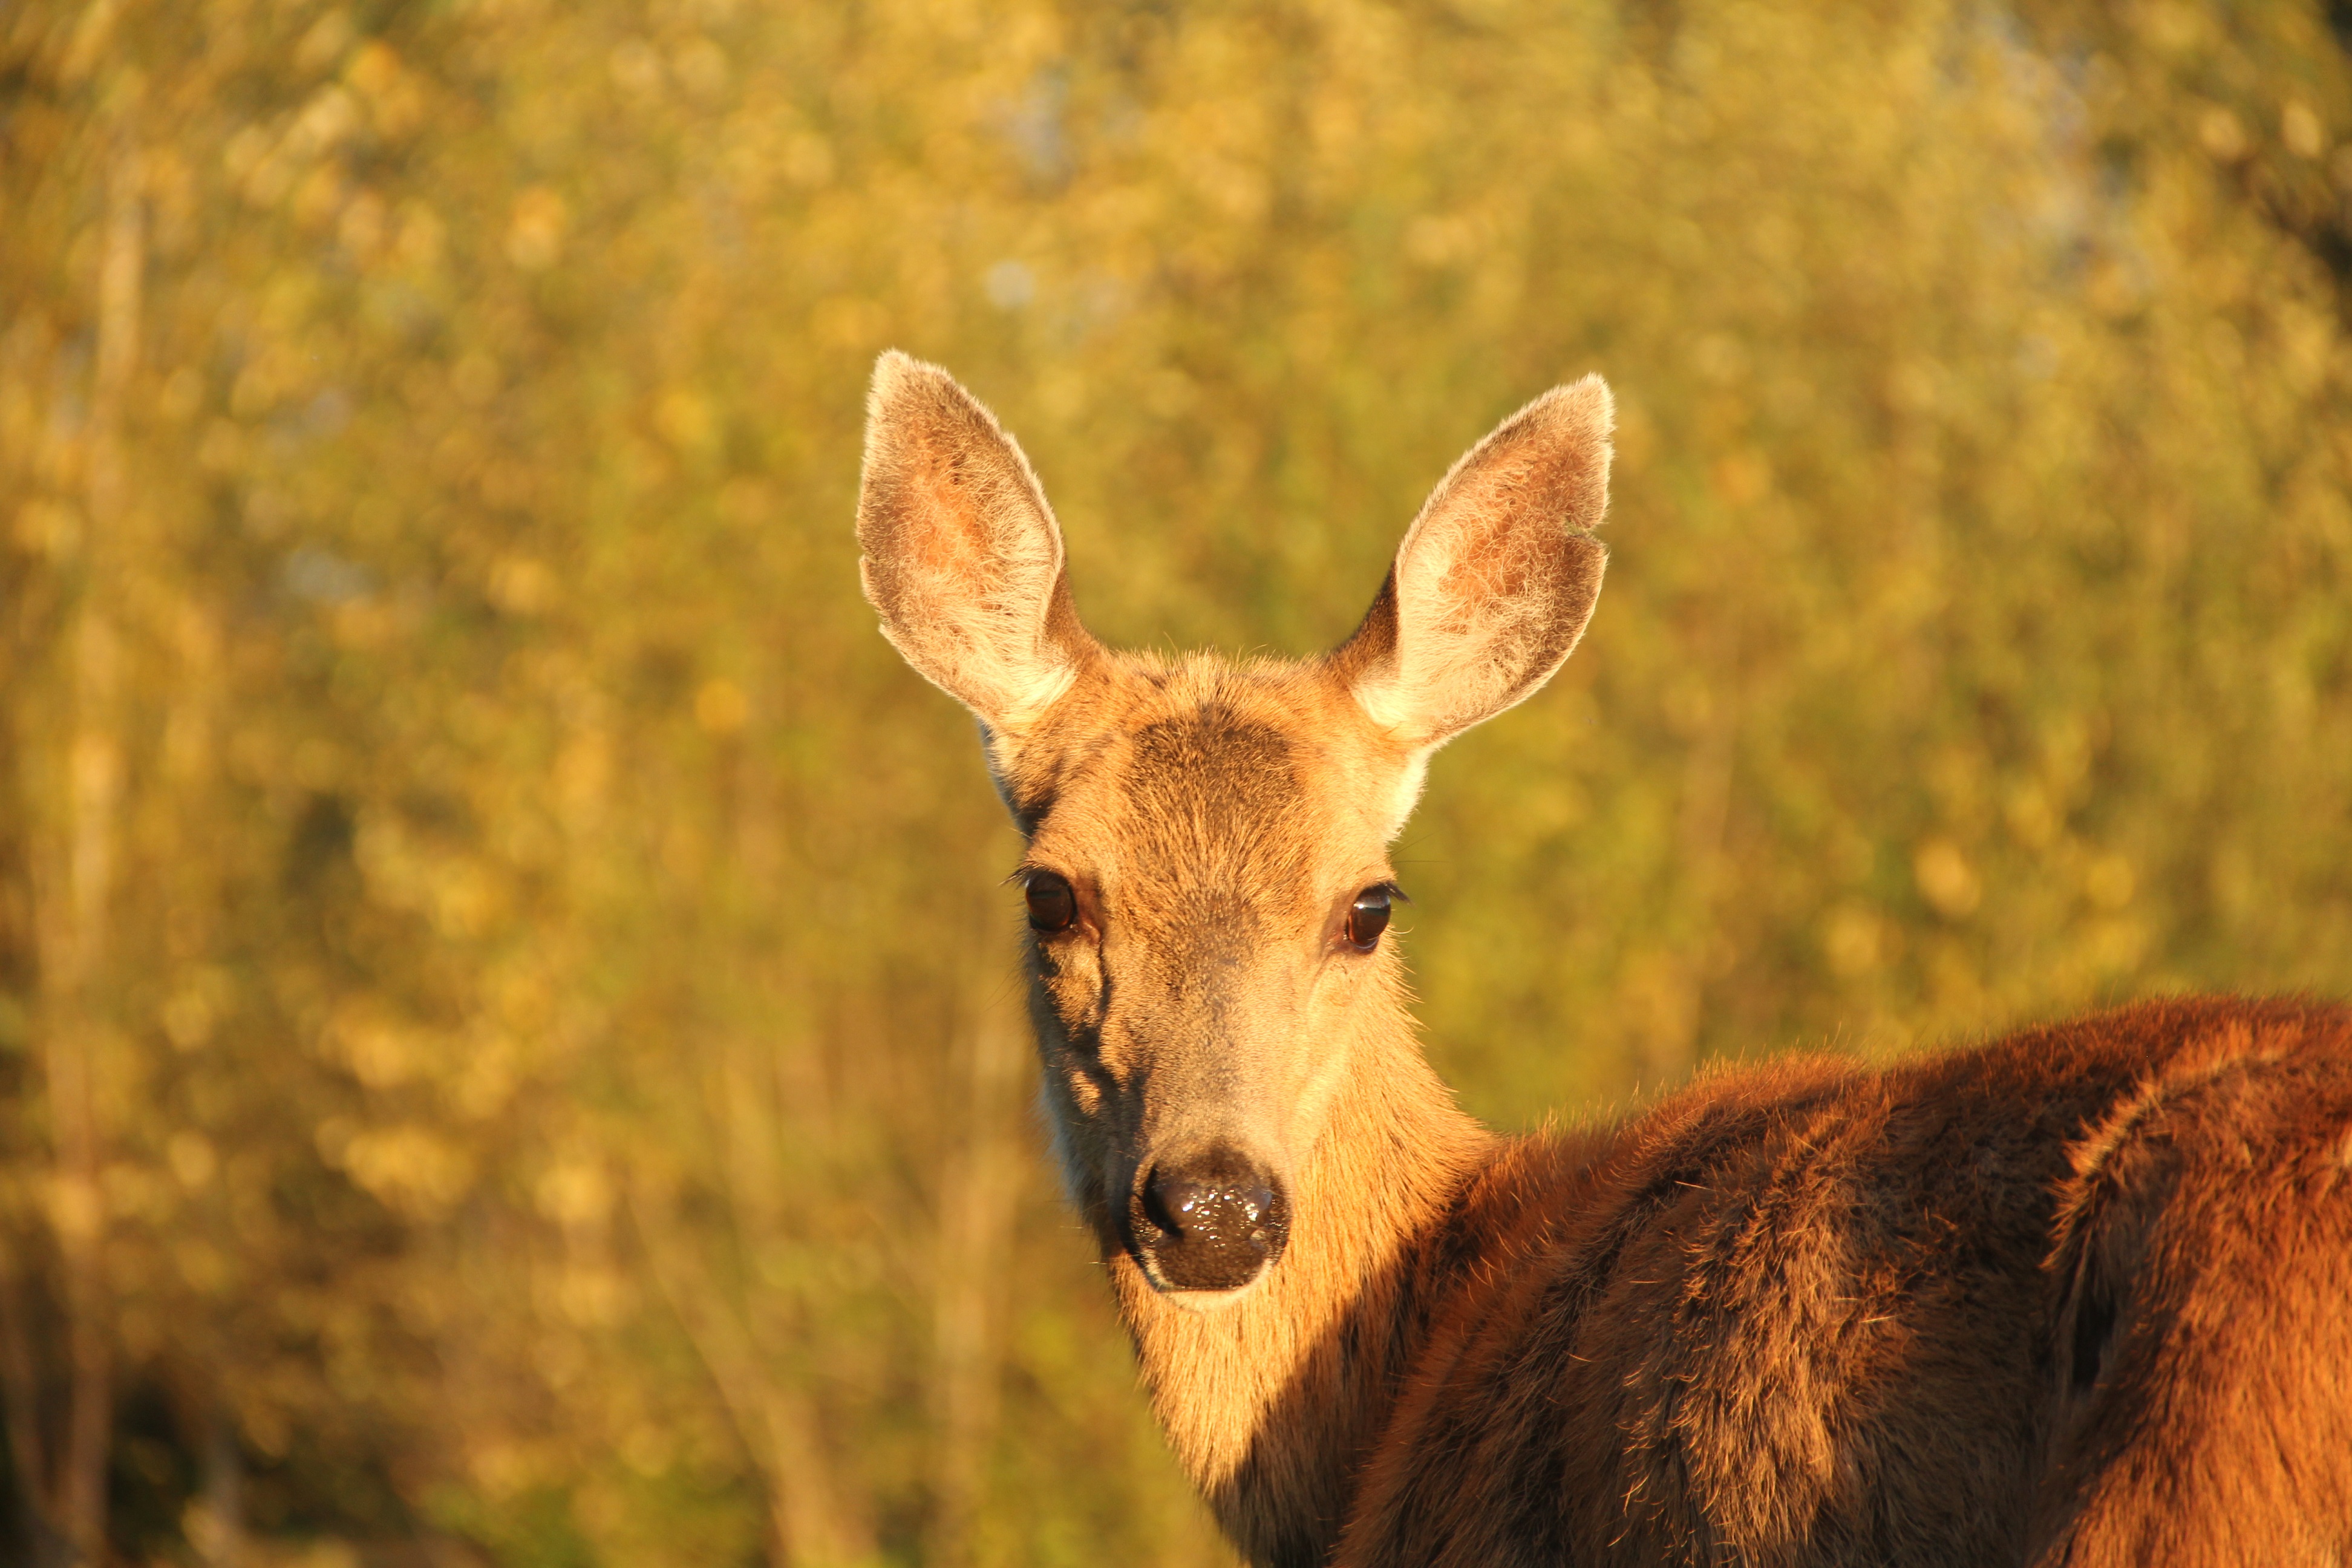 Deer in field (head on view)